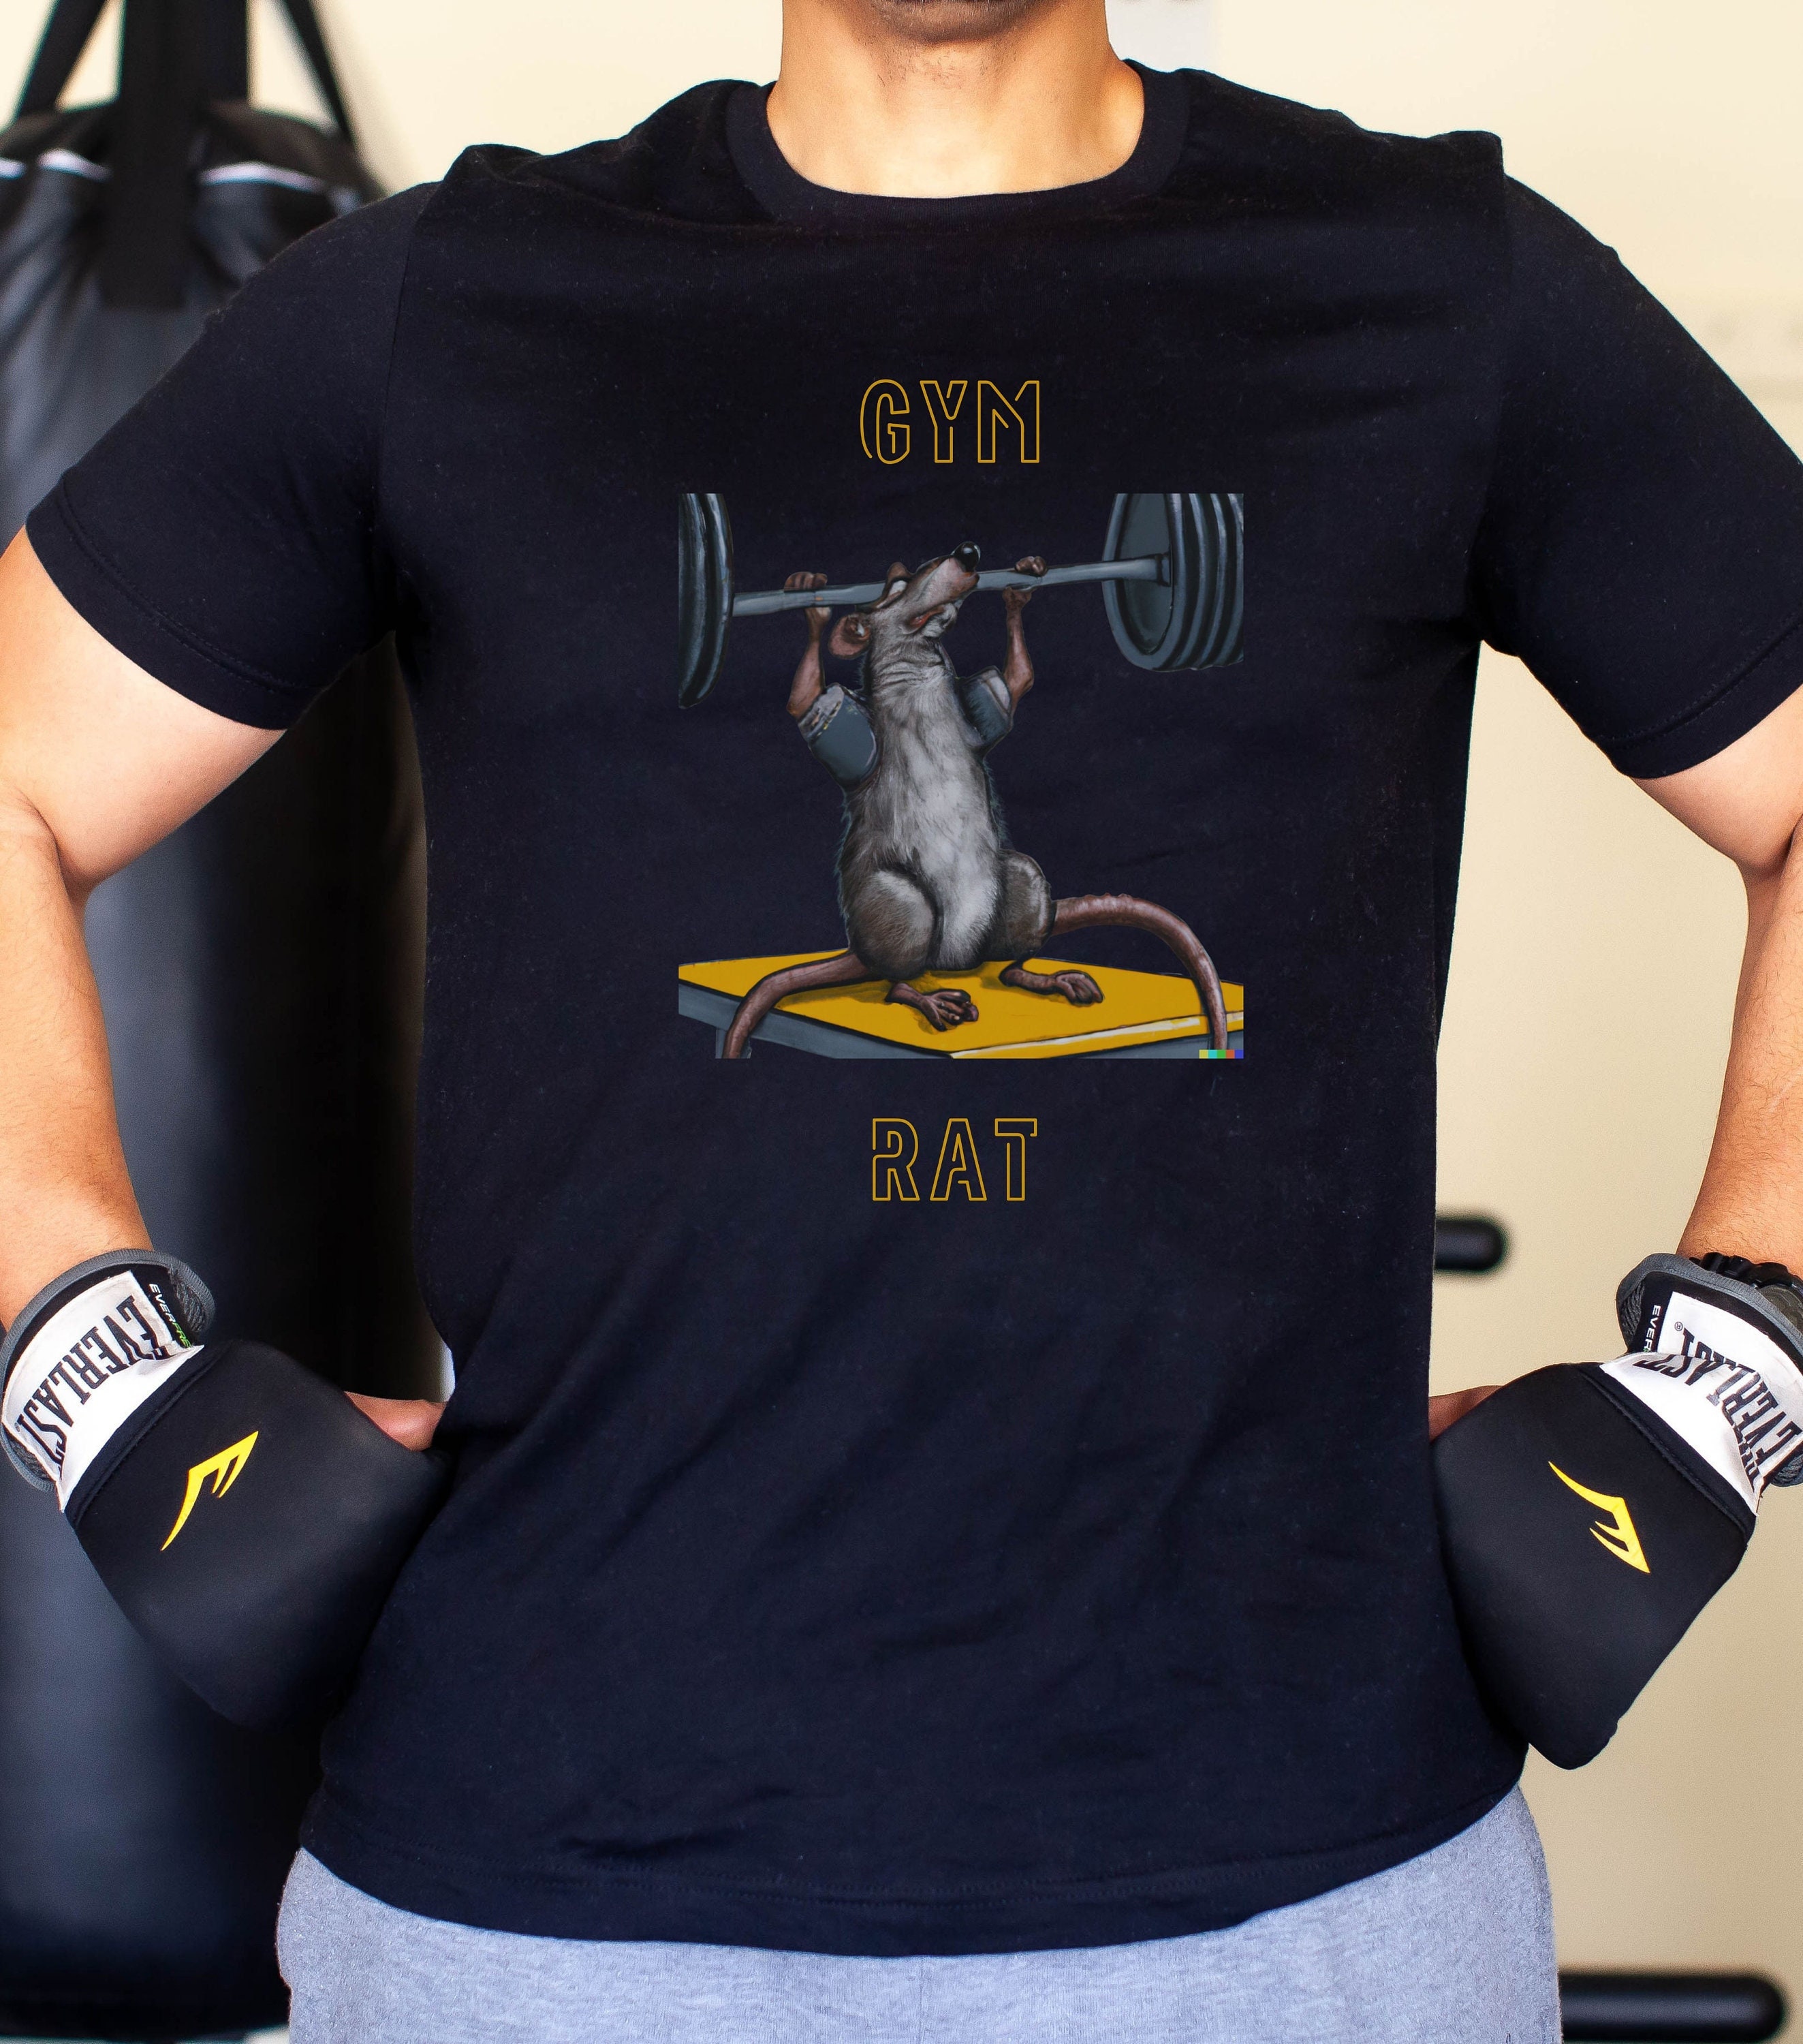 Camiseta sin mangas Gym Rat Funny Workout  Camiseta de levantamiento al  por mayor para tu tienda - Faire España